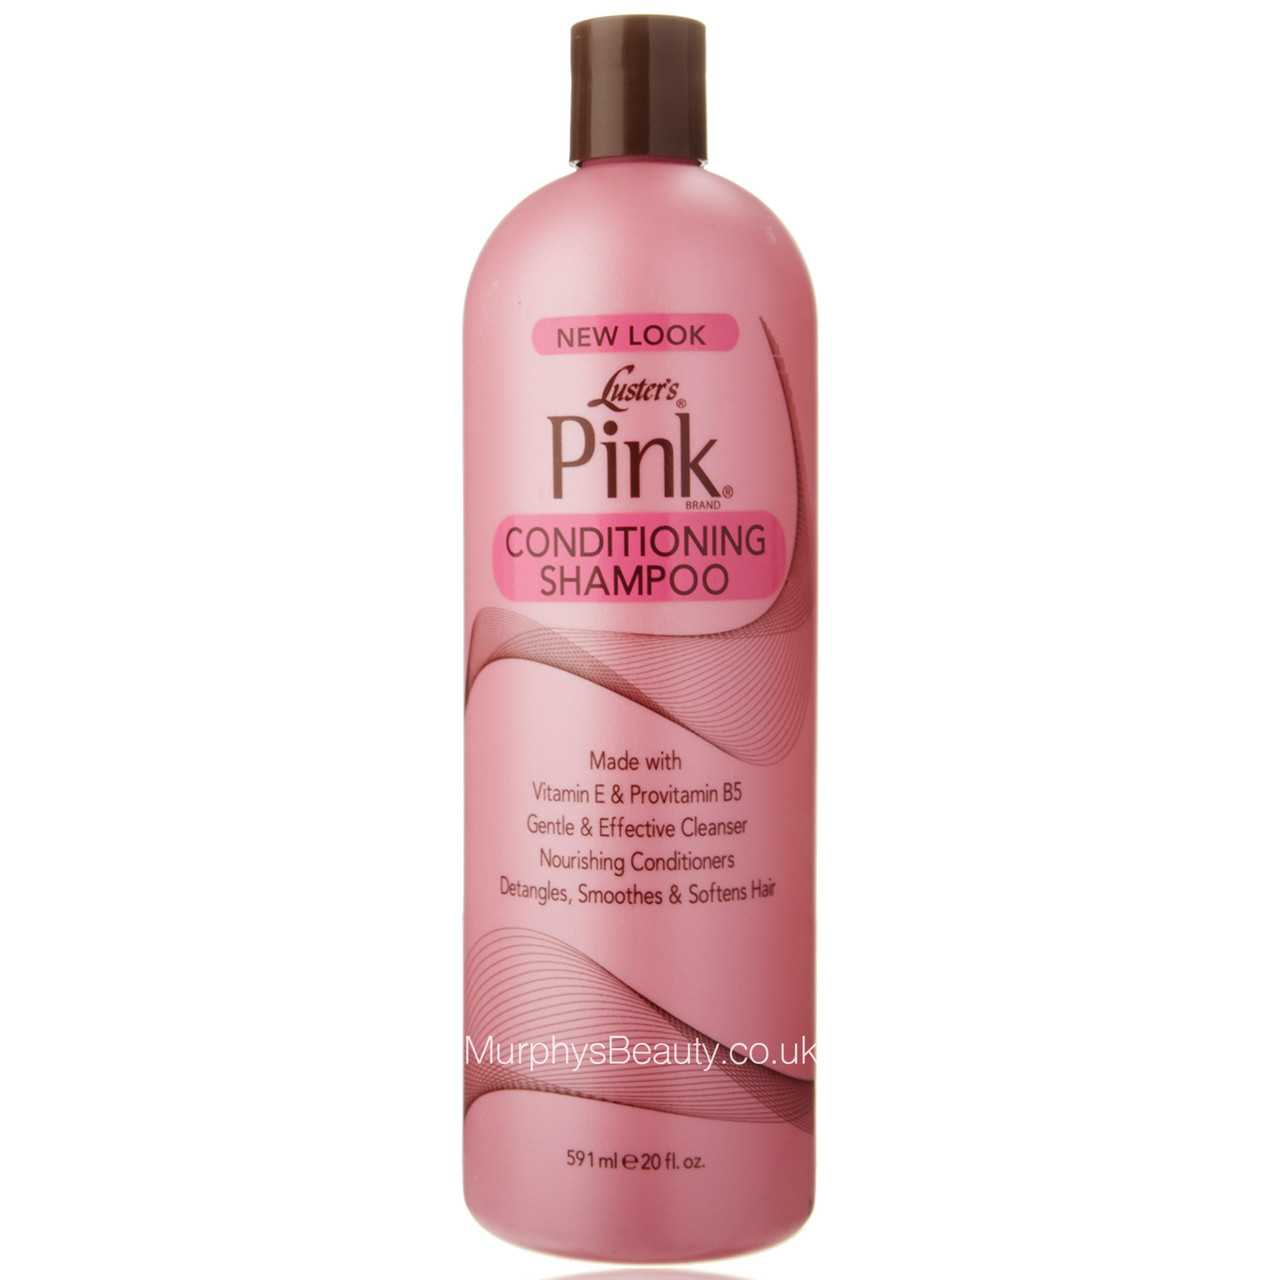 Розовый шампунь для волос. Schwarzkopf шампунь Pink Wash. Шварцкопп God to be розовый шампунь. Шампунь шварцкопф розовый. Шампунь и бальзам розовый.